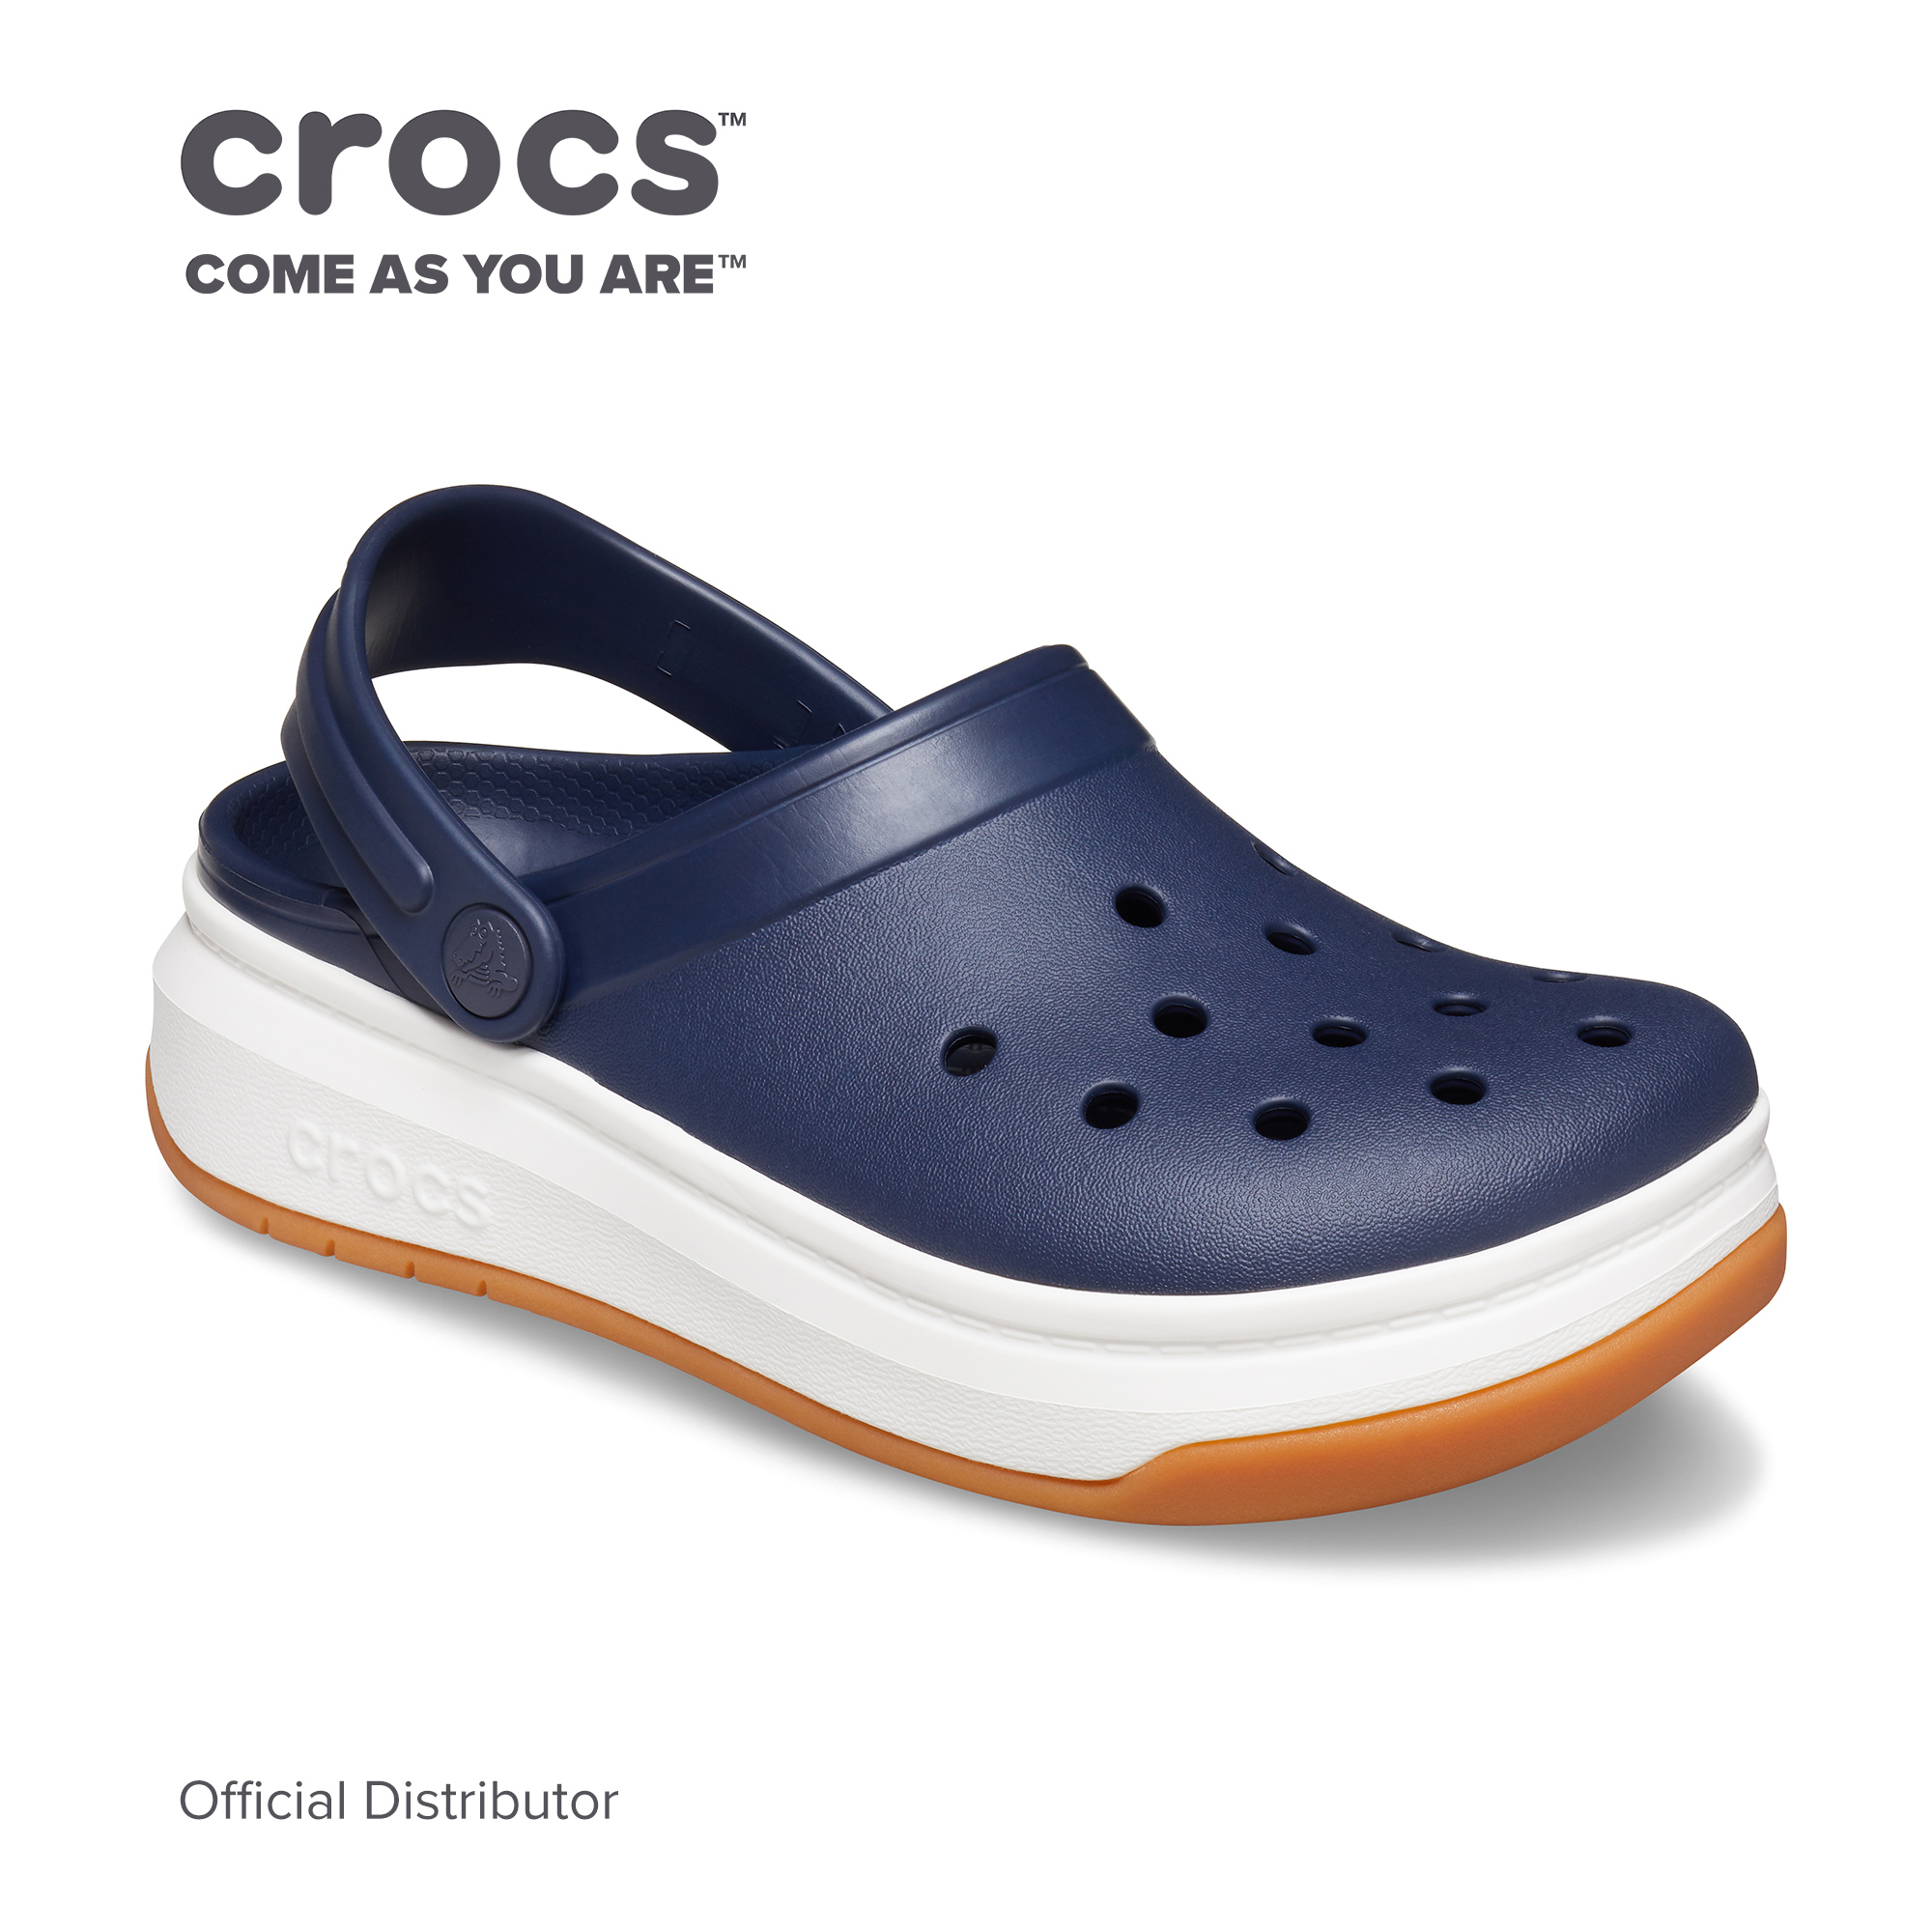 crocs price philippines